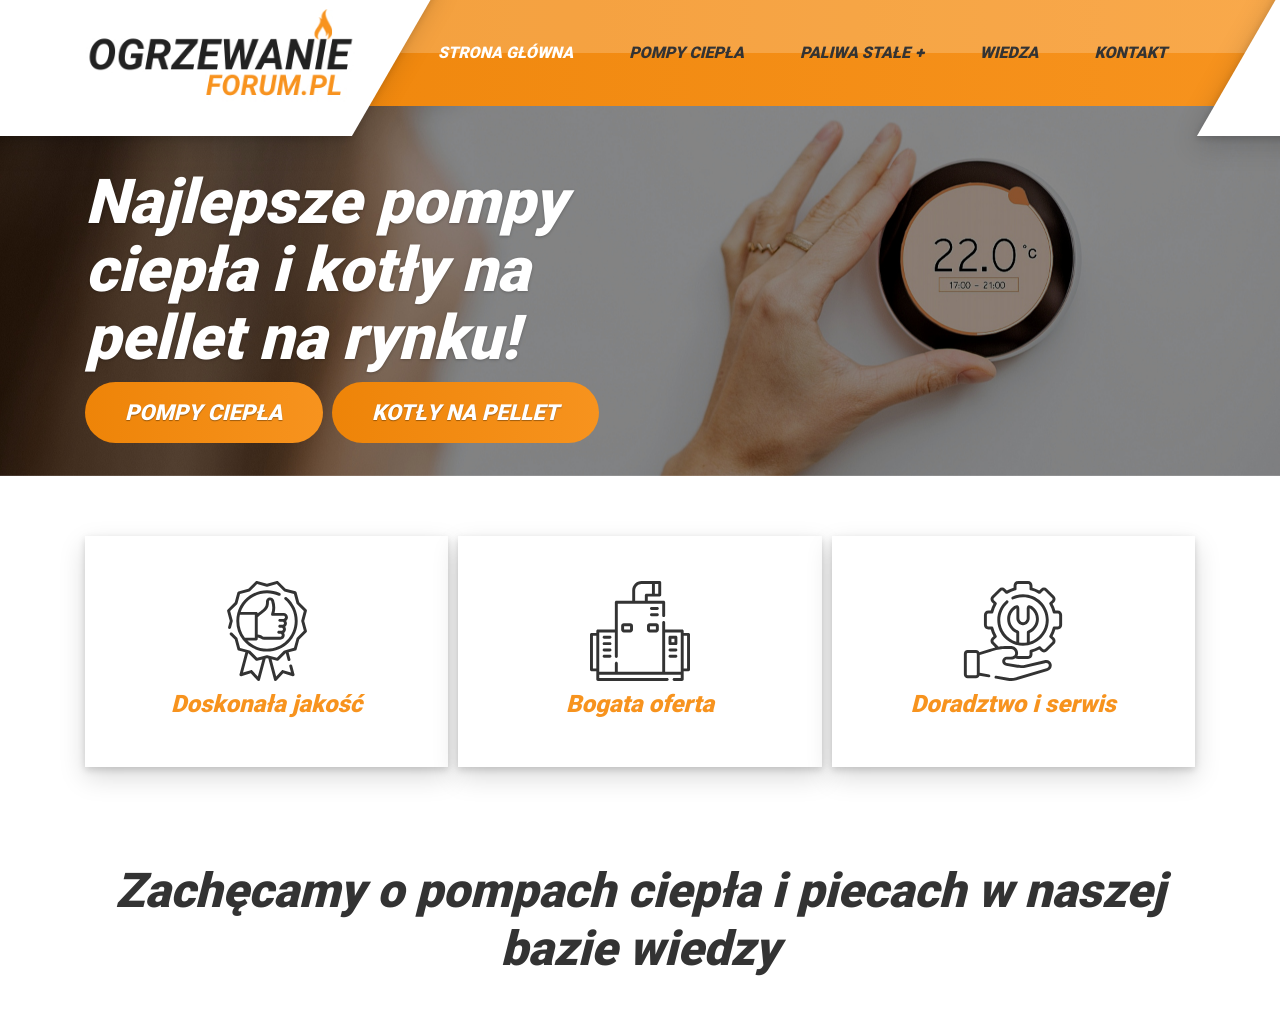 ogrzewanie-forum.pl